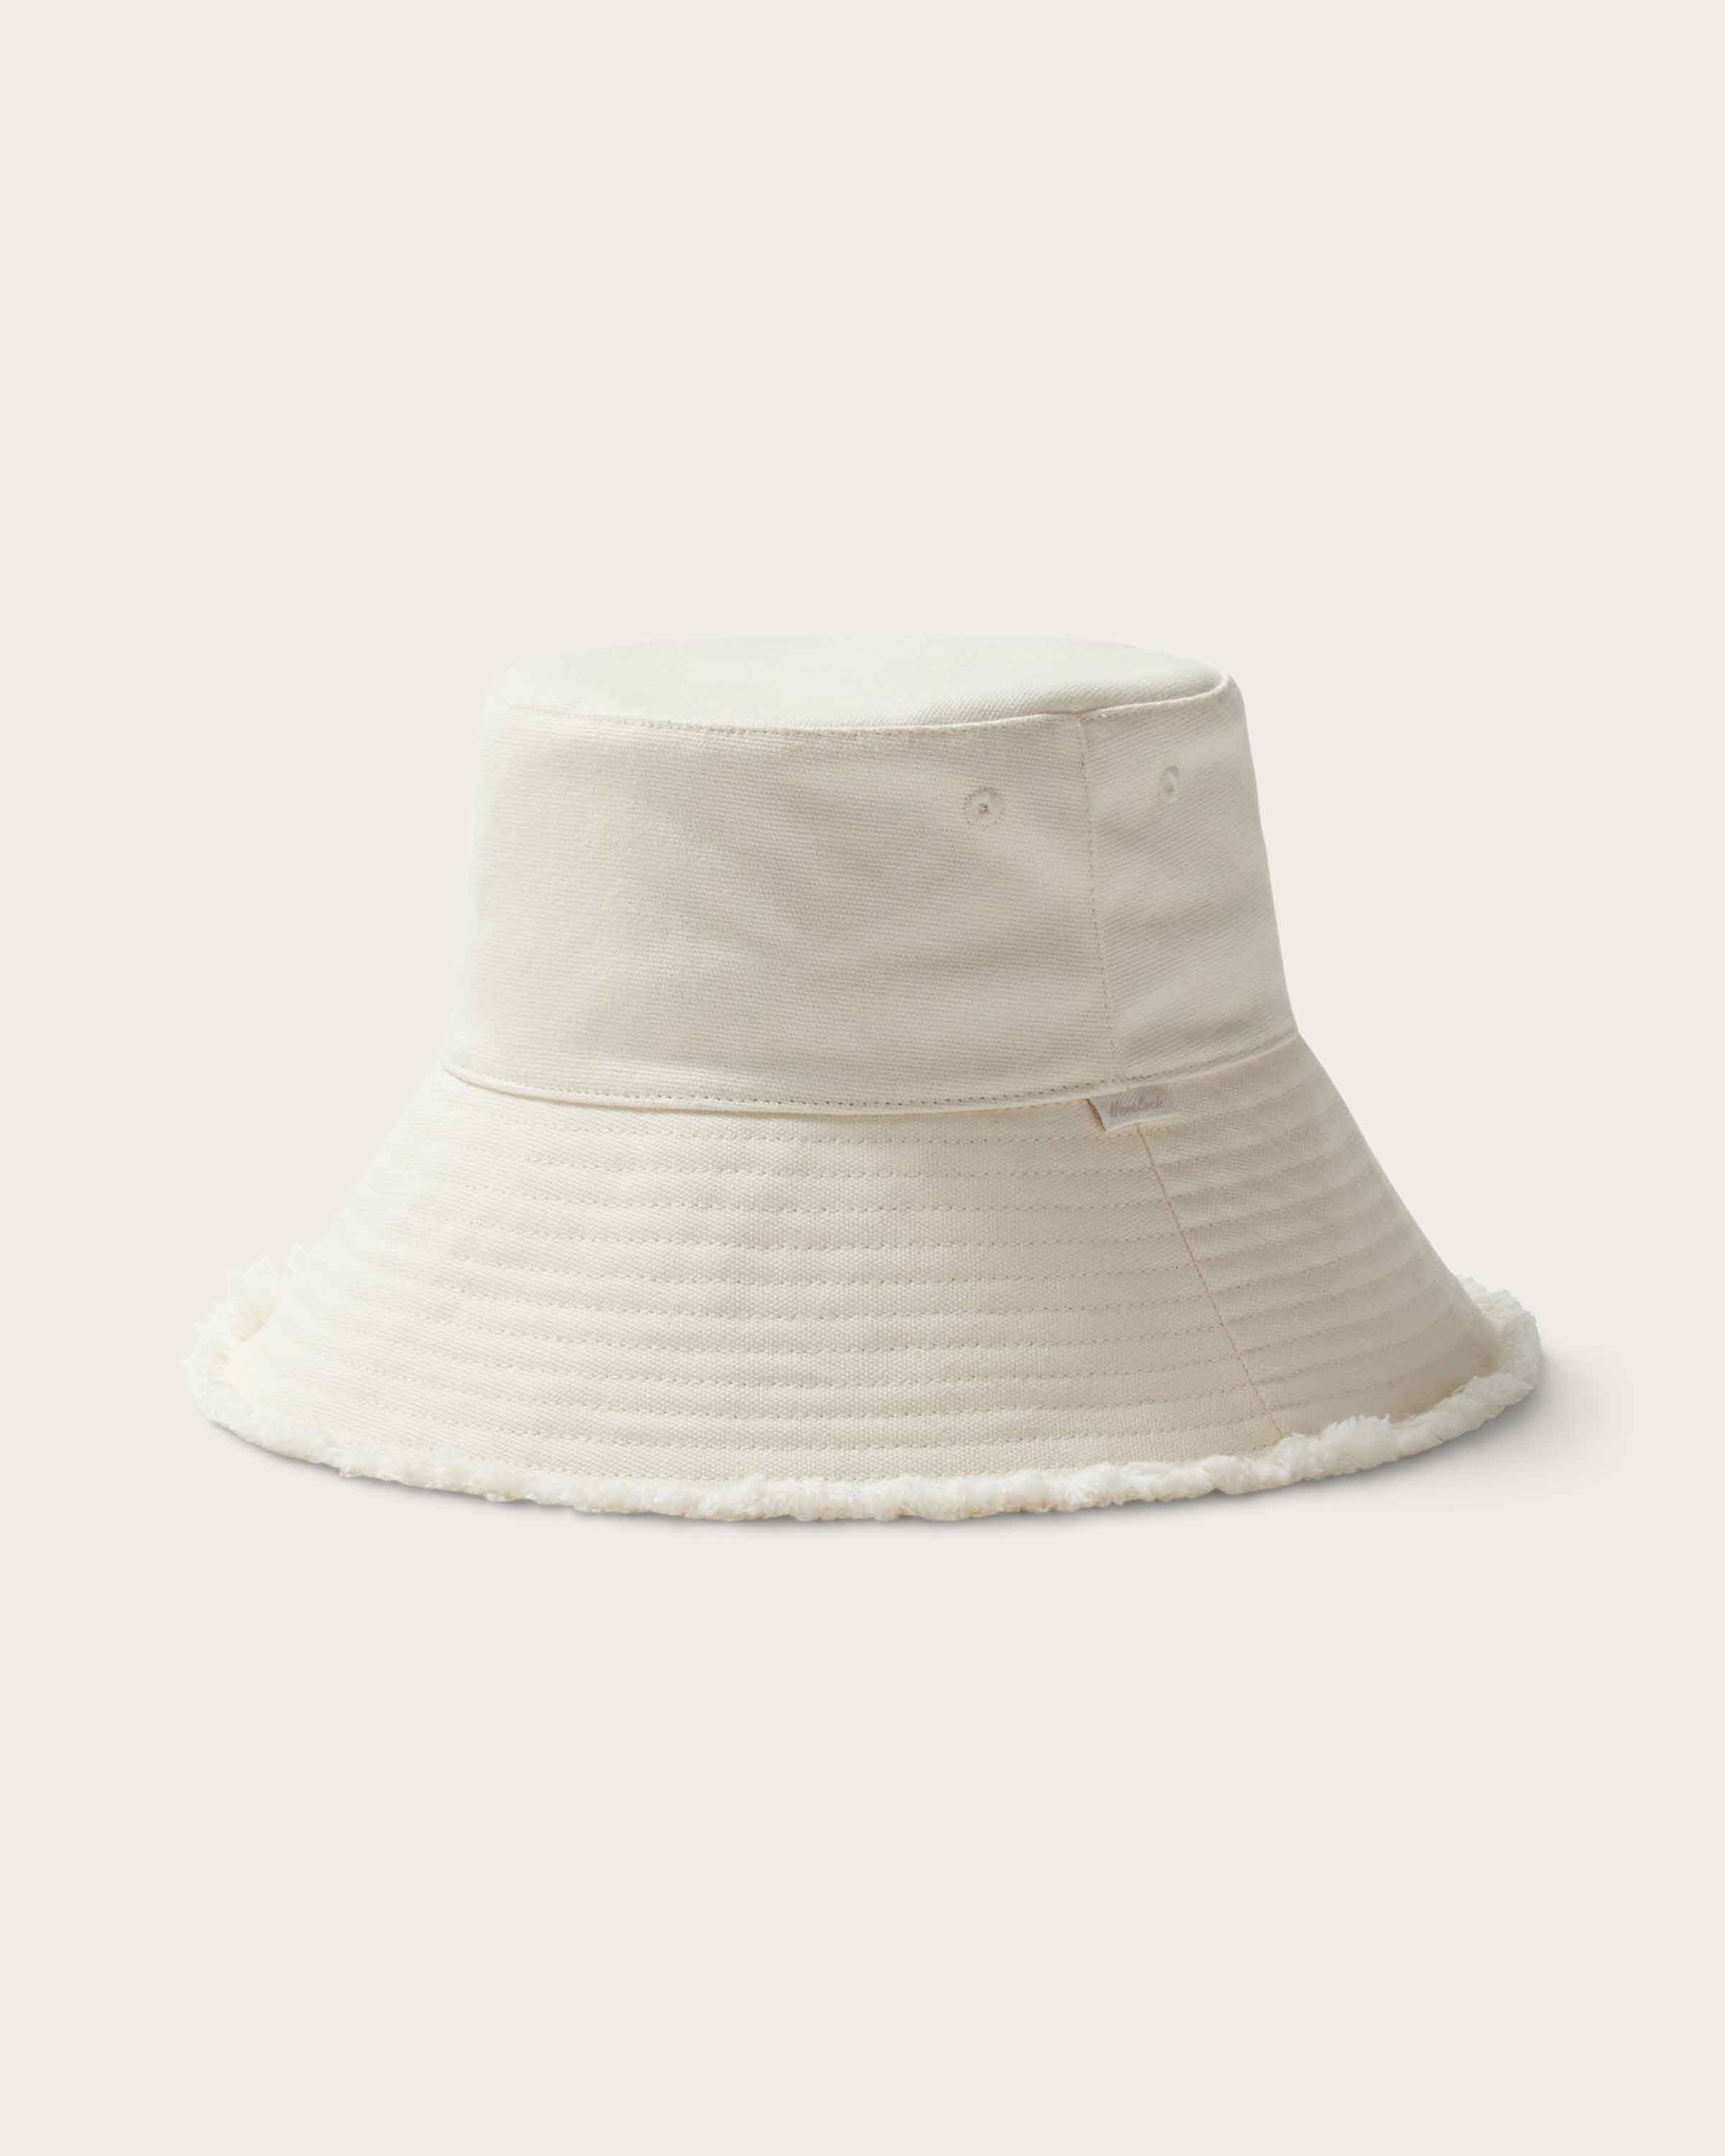 Bali Wide Brim Bucket in Bone - undefined - Hemlock Hat Co. Buckets